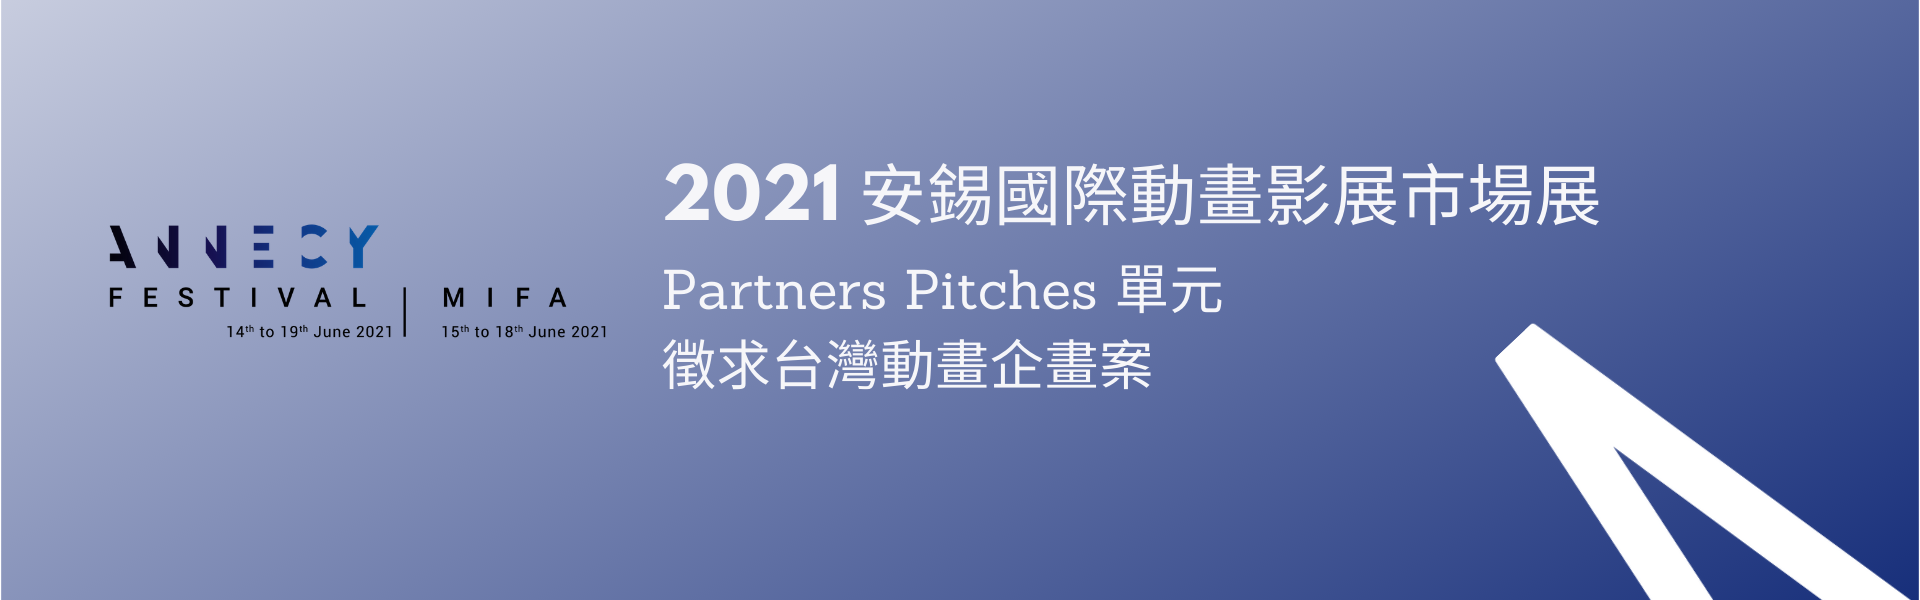 徵求台灣動畫企畫案參加 2021 安錫國際動畫影展市場展 （已截止）「Partners Pitches」單元